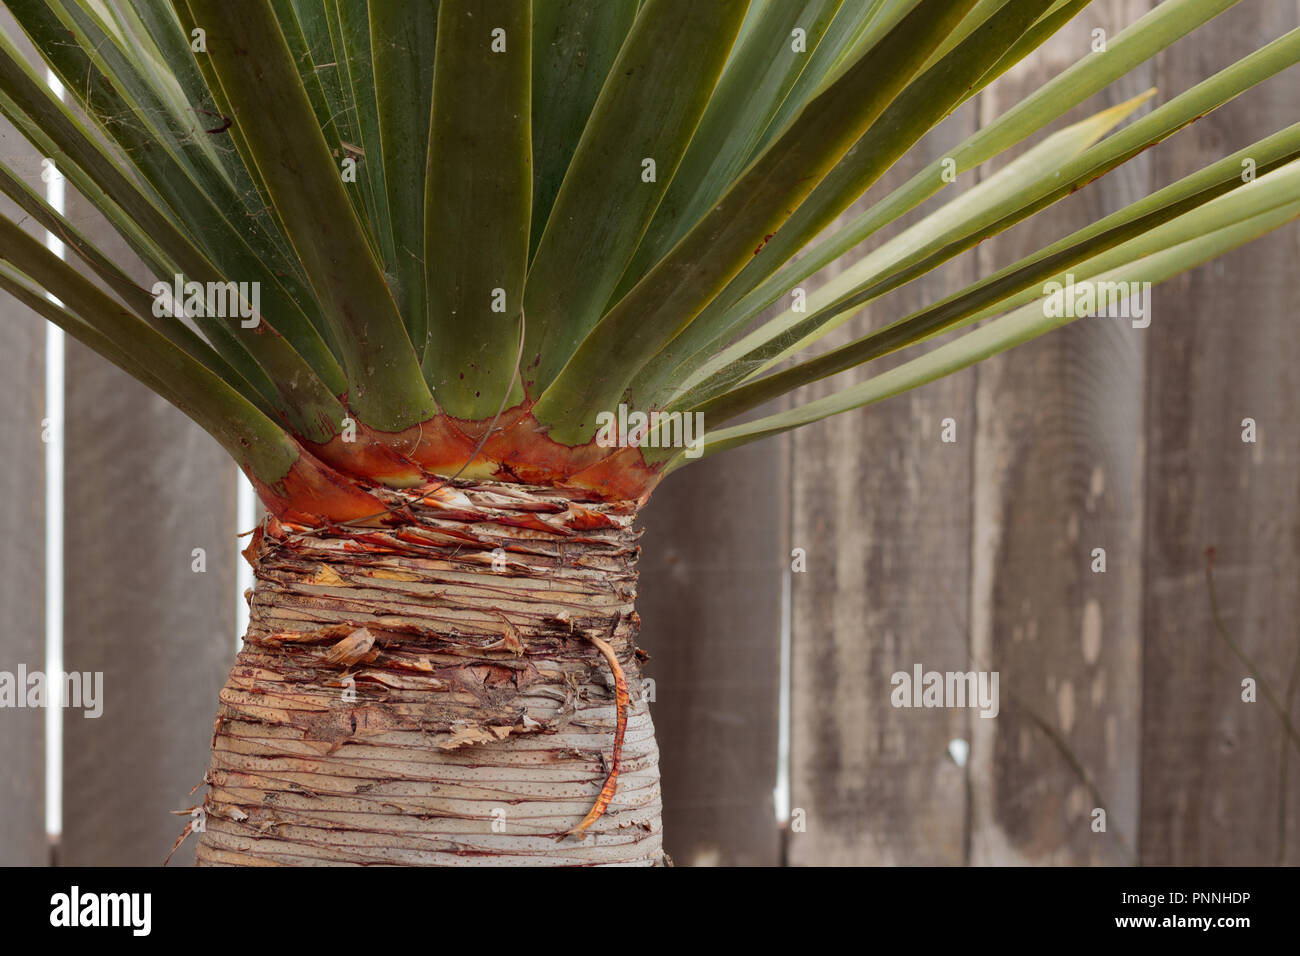 Hohen saftigen Palm horizontale Linien auf Rumpf, grüne Blätter in einem Winkel und vertikale Holz leiste Zaun in horizontaler Hintergrund wachsenden Stockfoto